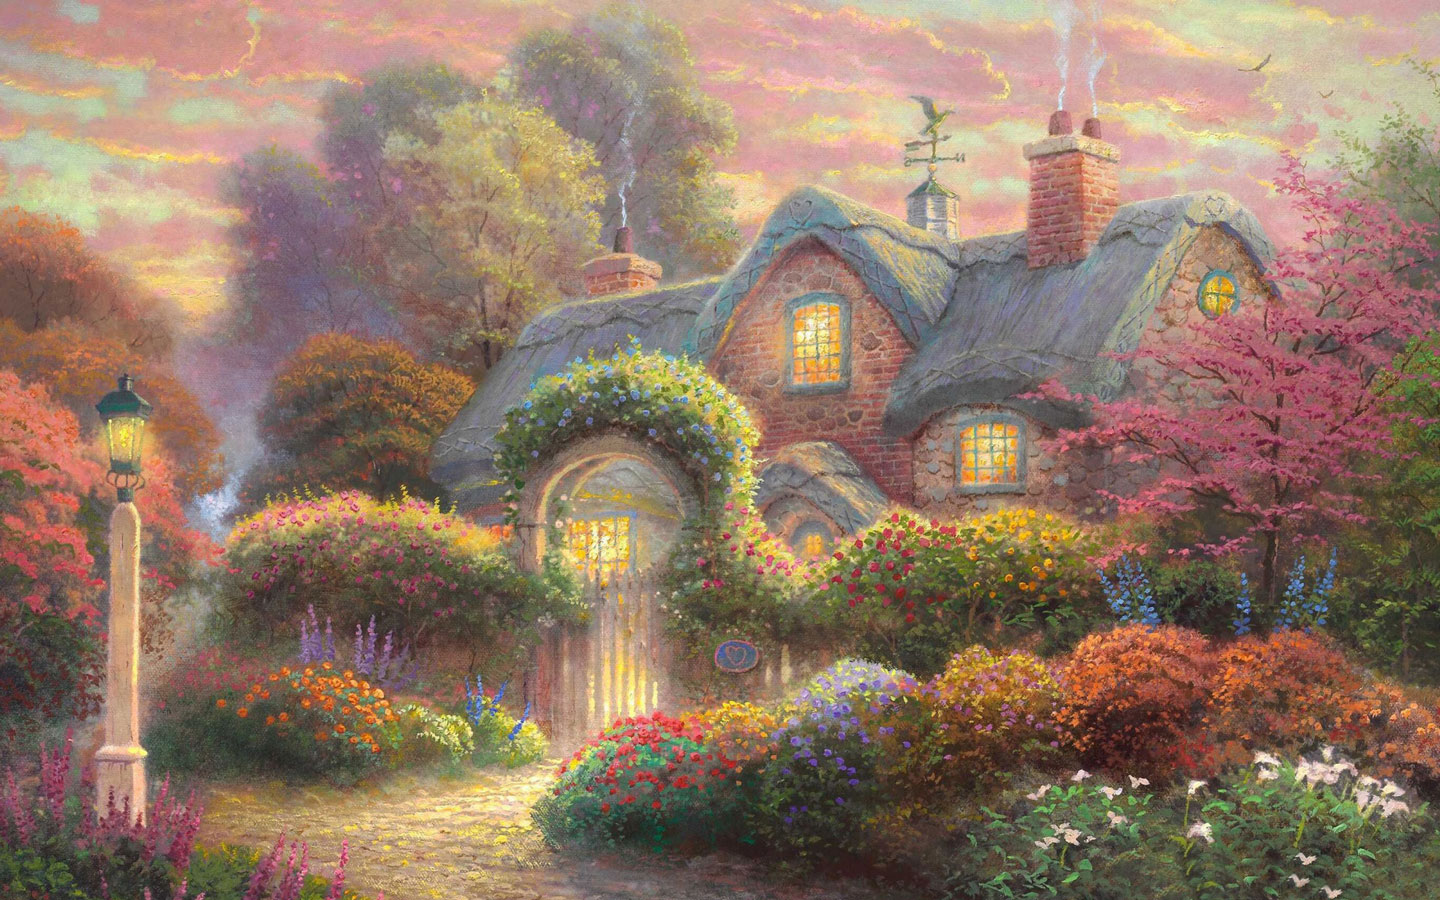 Fairytale Cottage Painting Puter Desktop Wallpaper Pictures